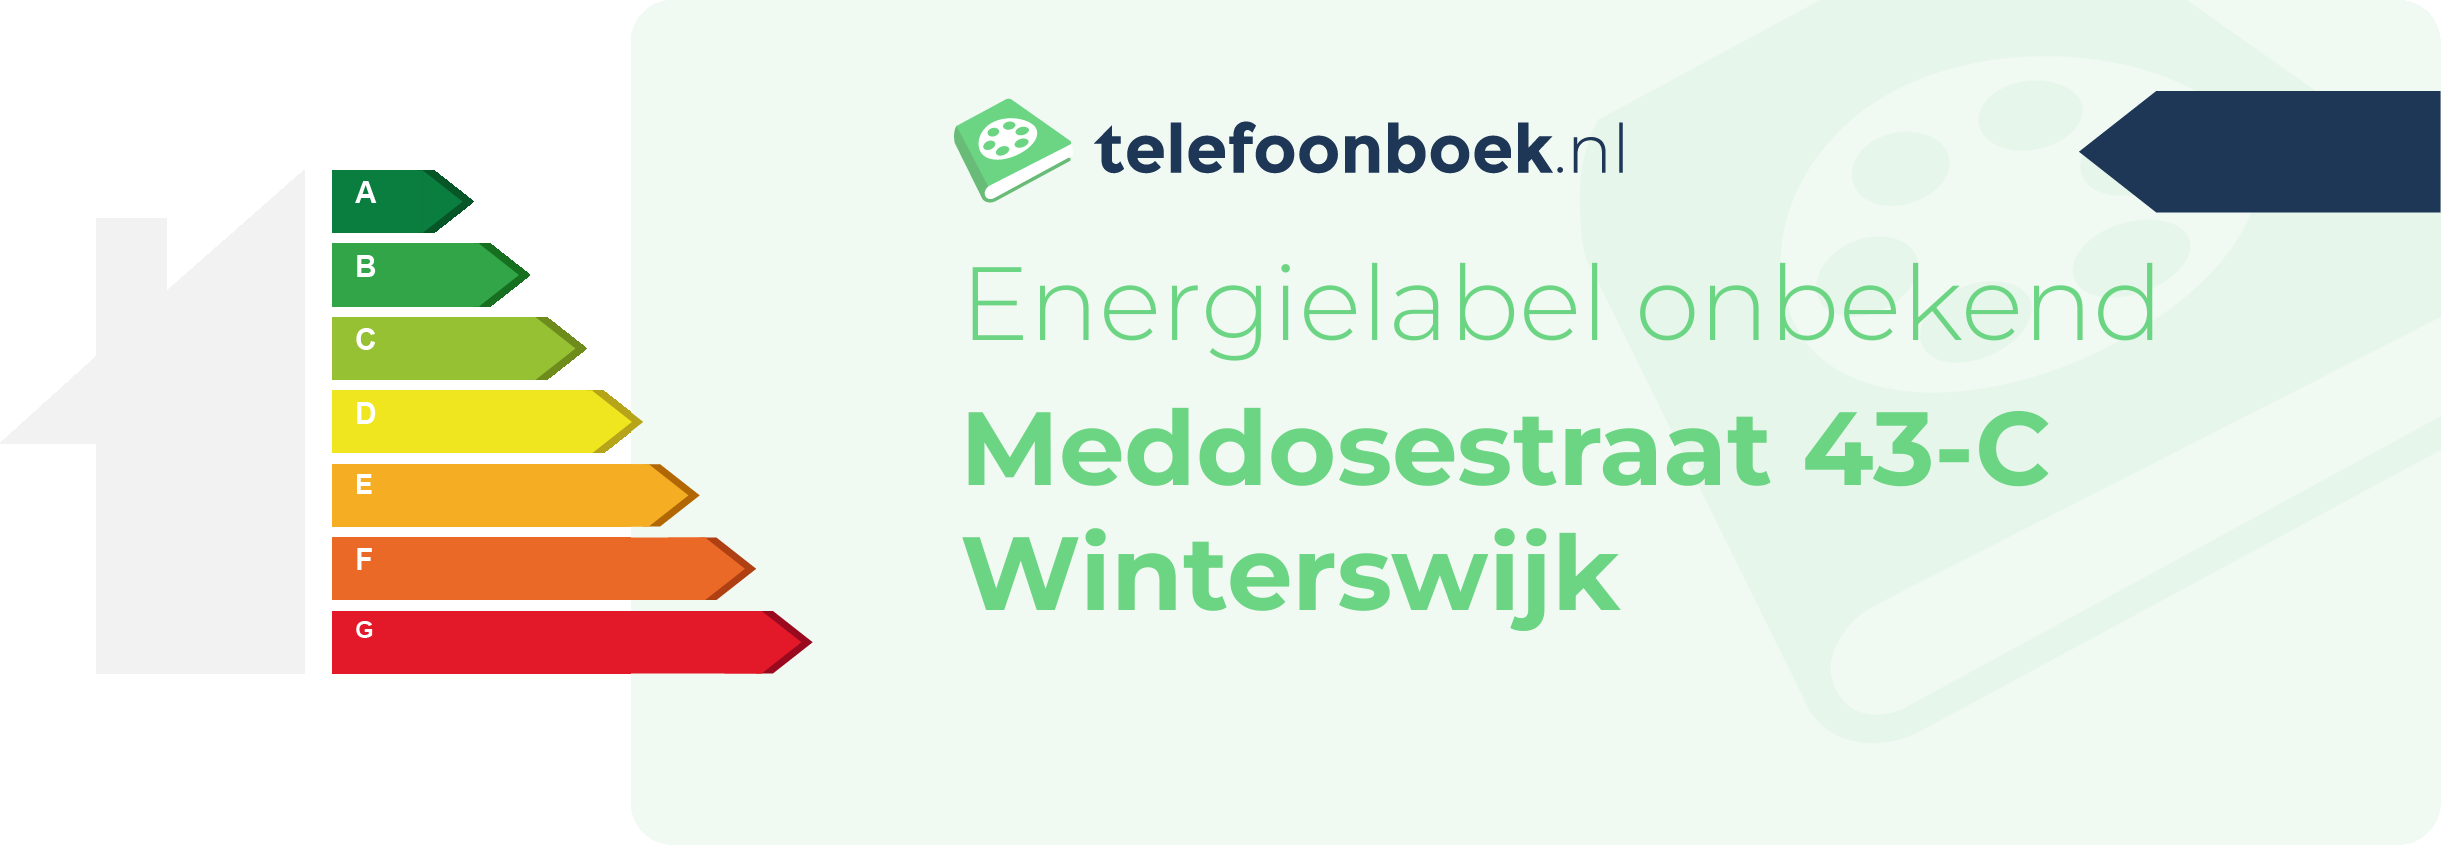 Energielabel Meddosestraat 43-C Winterswijk